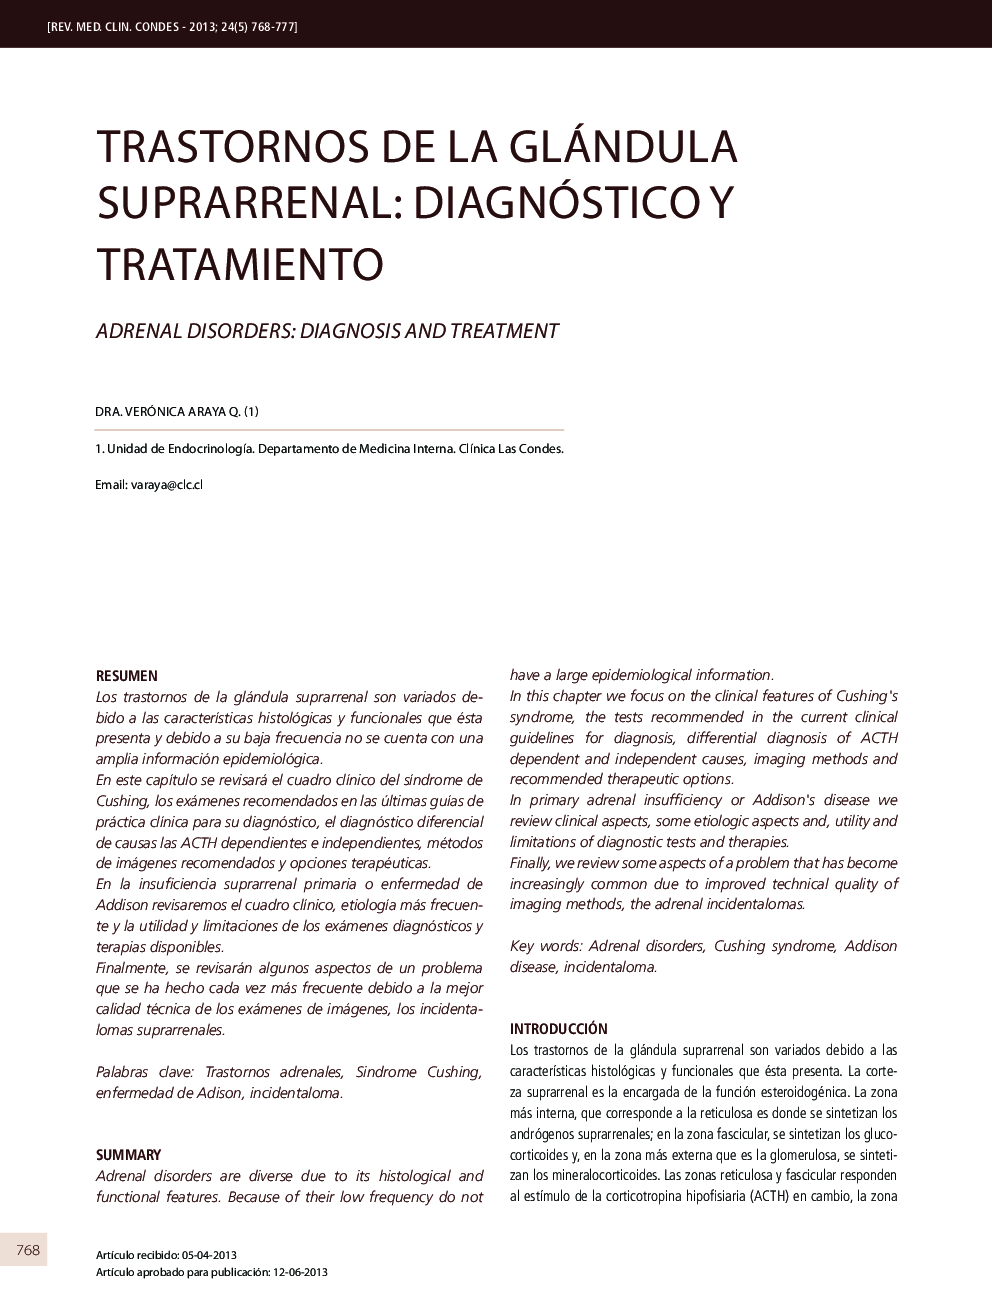 Trastornos de la glándula suprarrenal: diagnóstico y tratamiento